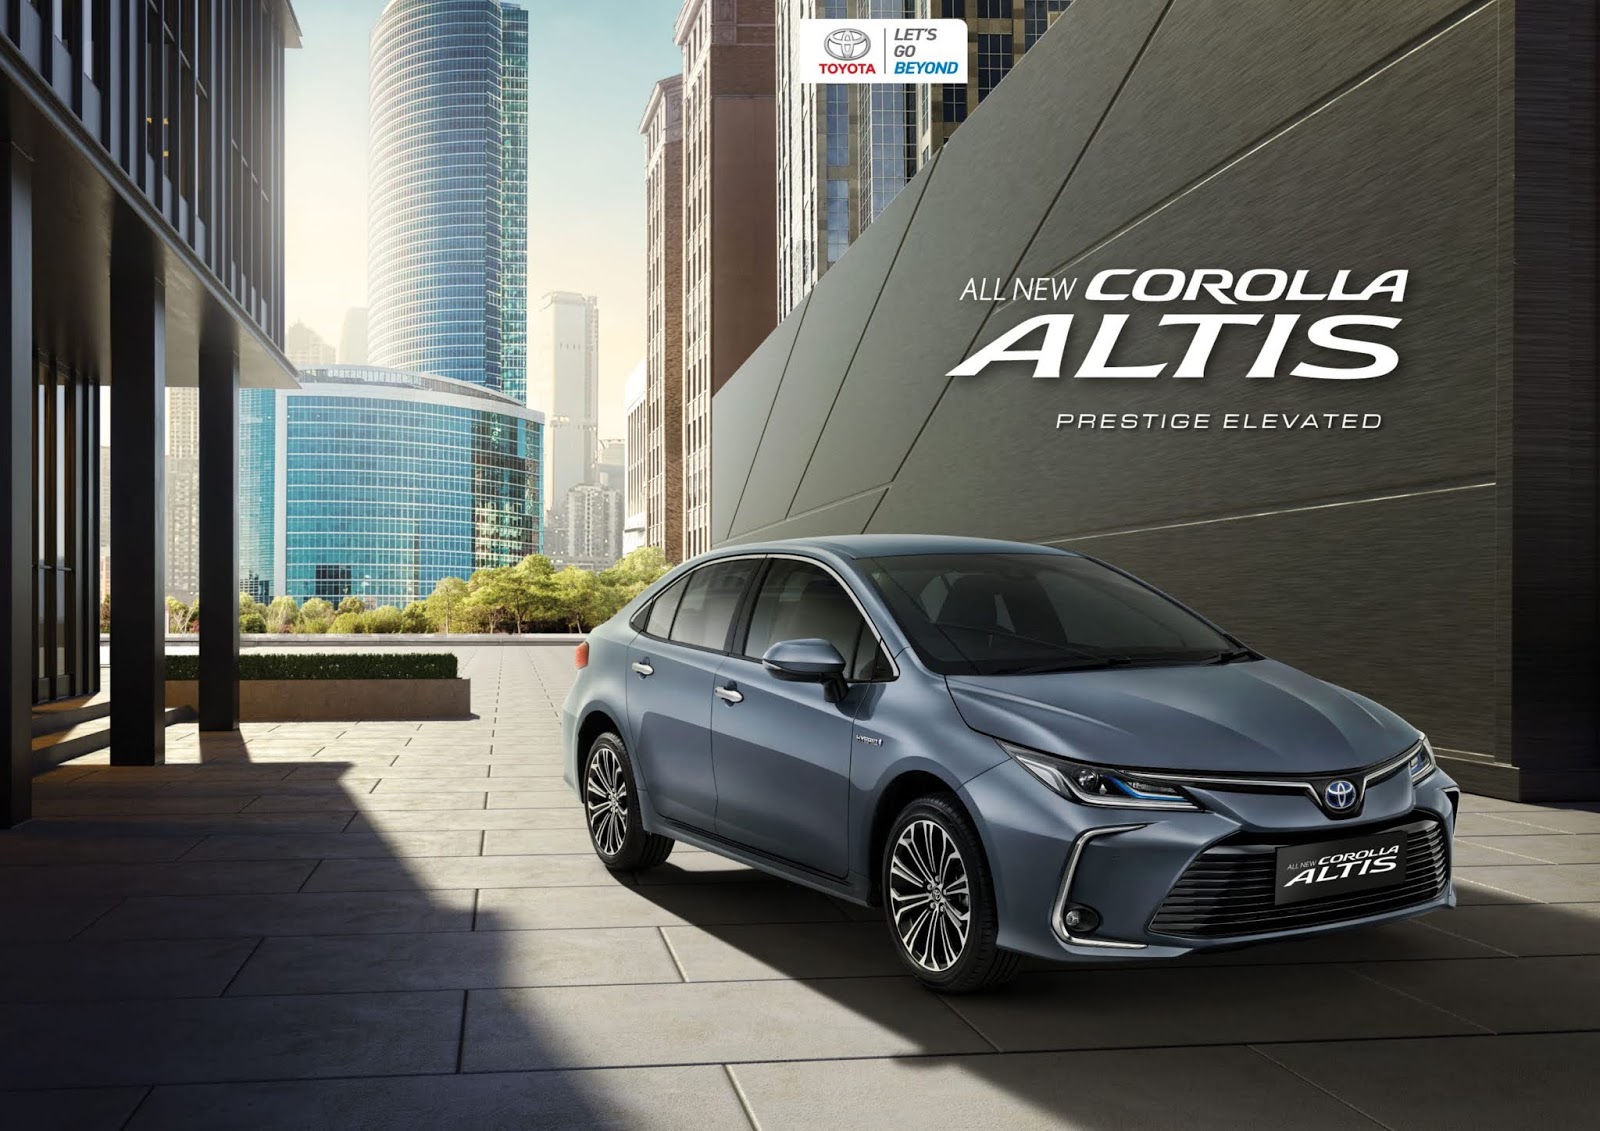 All New Corolla Altis - Info Promo & Harga Toyota Corolla Altis Bali 2020